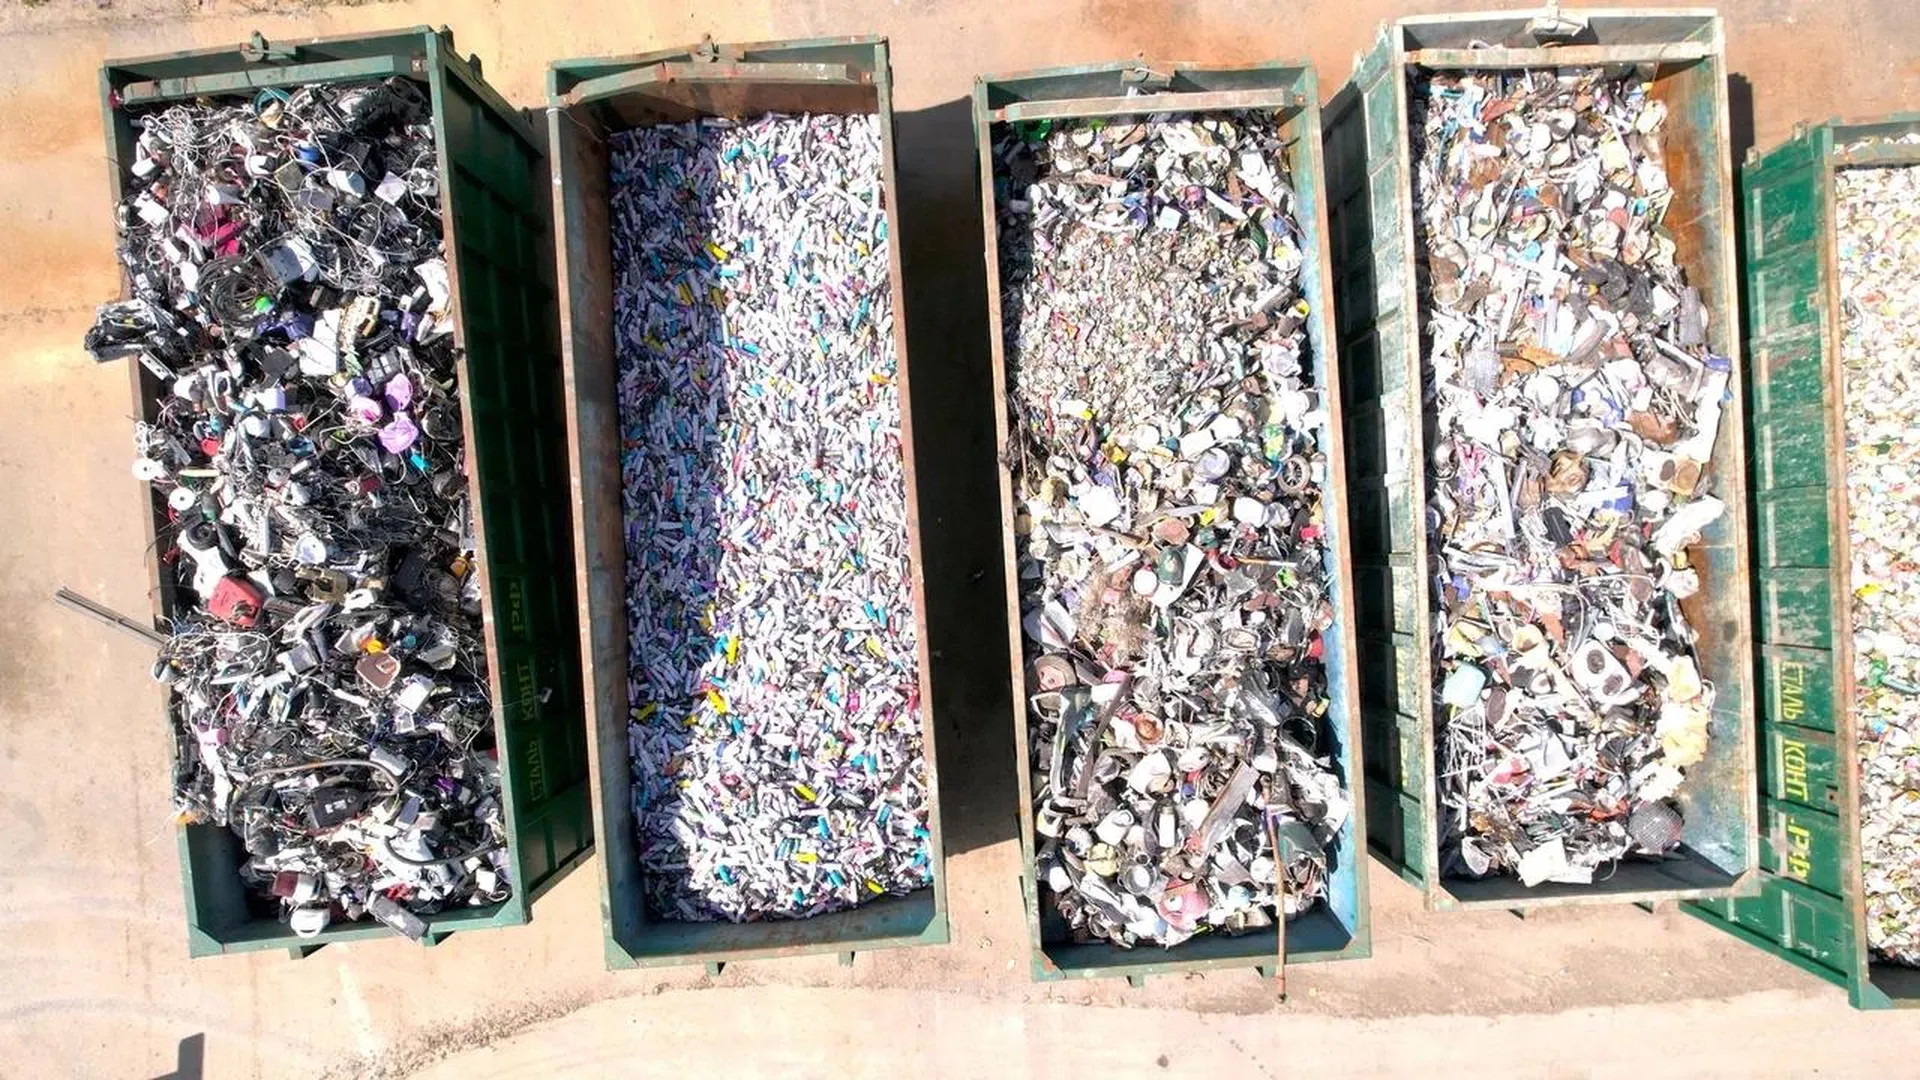 Двадцать пять тысяч тонн металла отправили из Подмосковья на переработку за два года